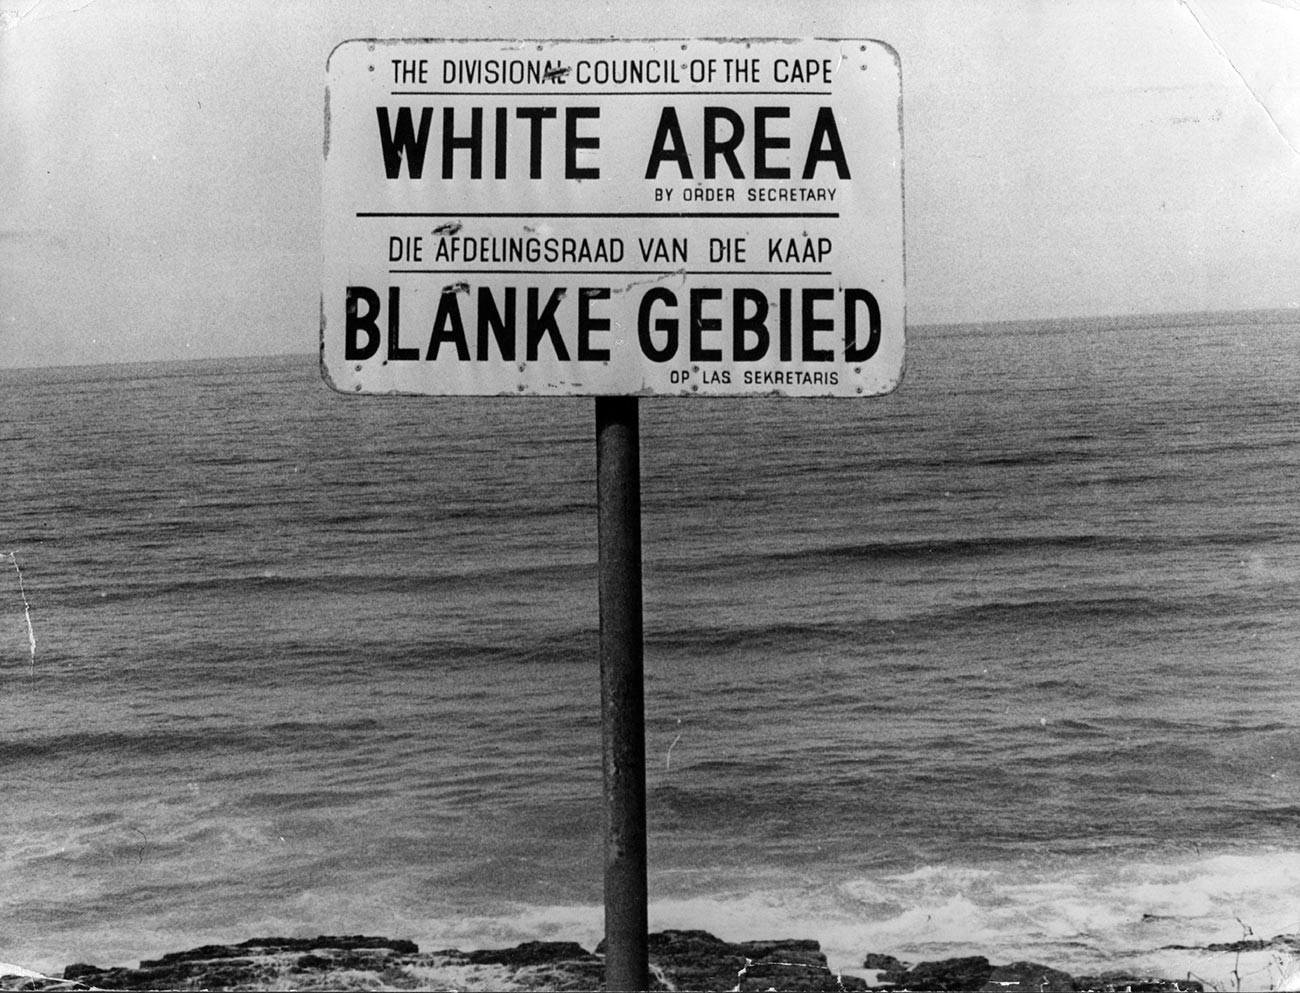 Placa de Apartheid em uma praia perto da Cidade do Cabo, demarcando área apenas para brancos
